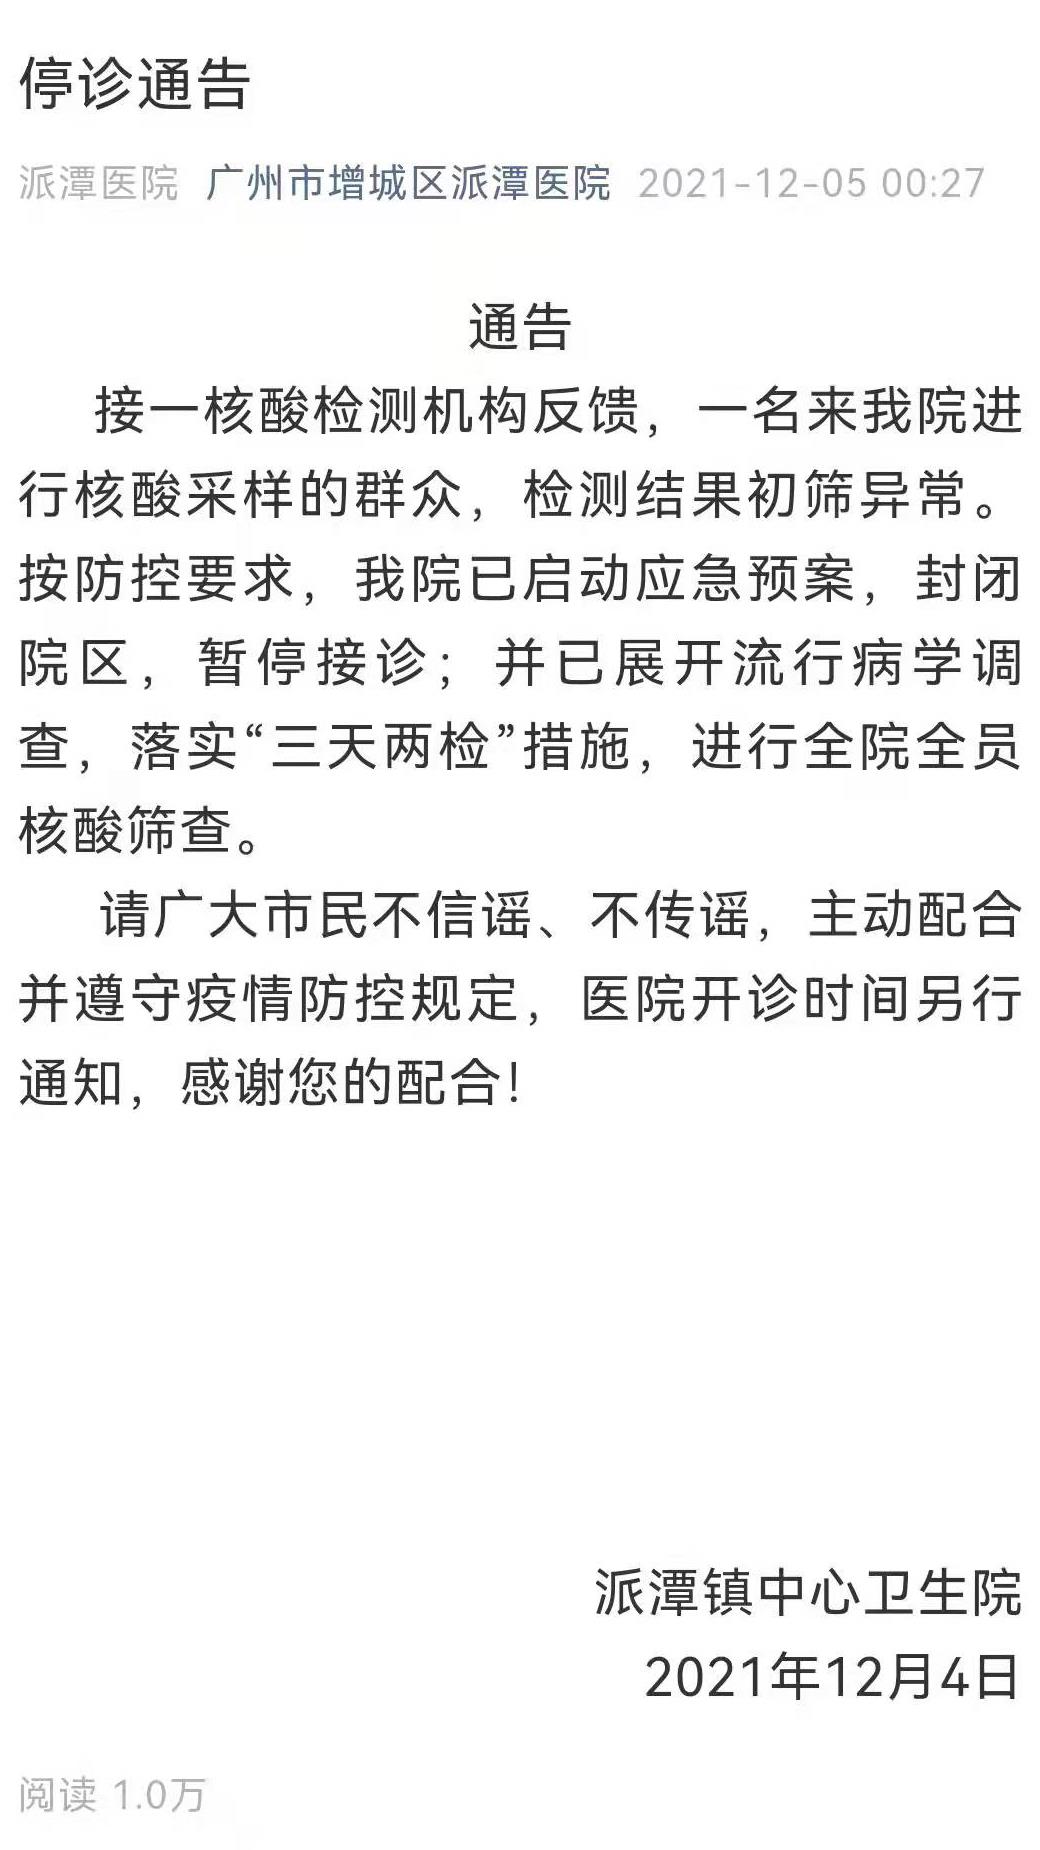 一人核酸初筛异常广州增城区派潭医院发布停诊通告